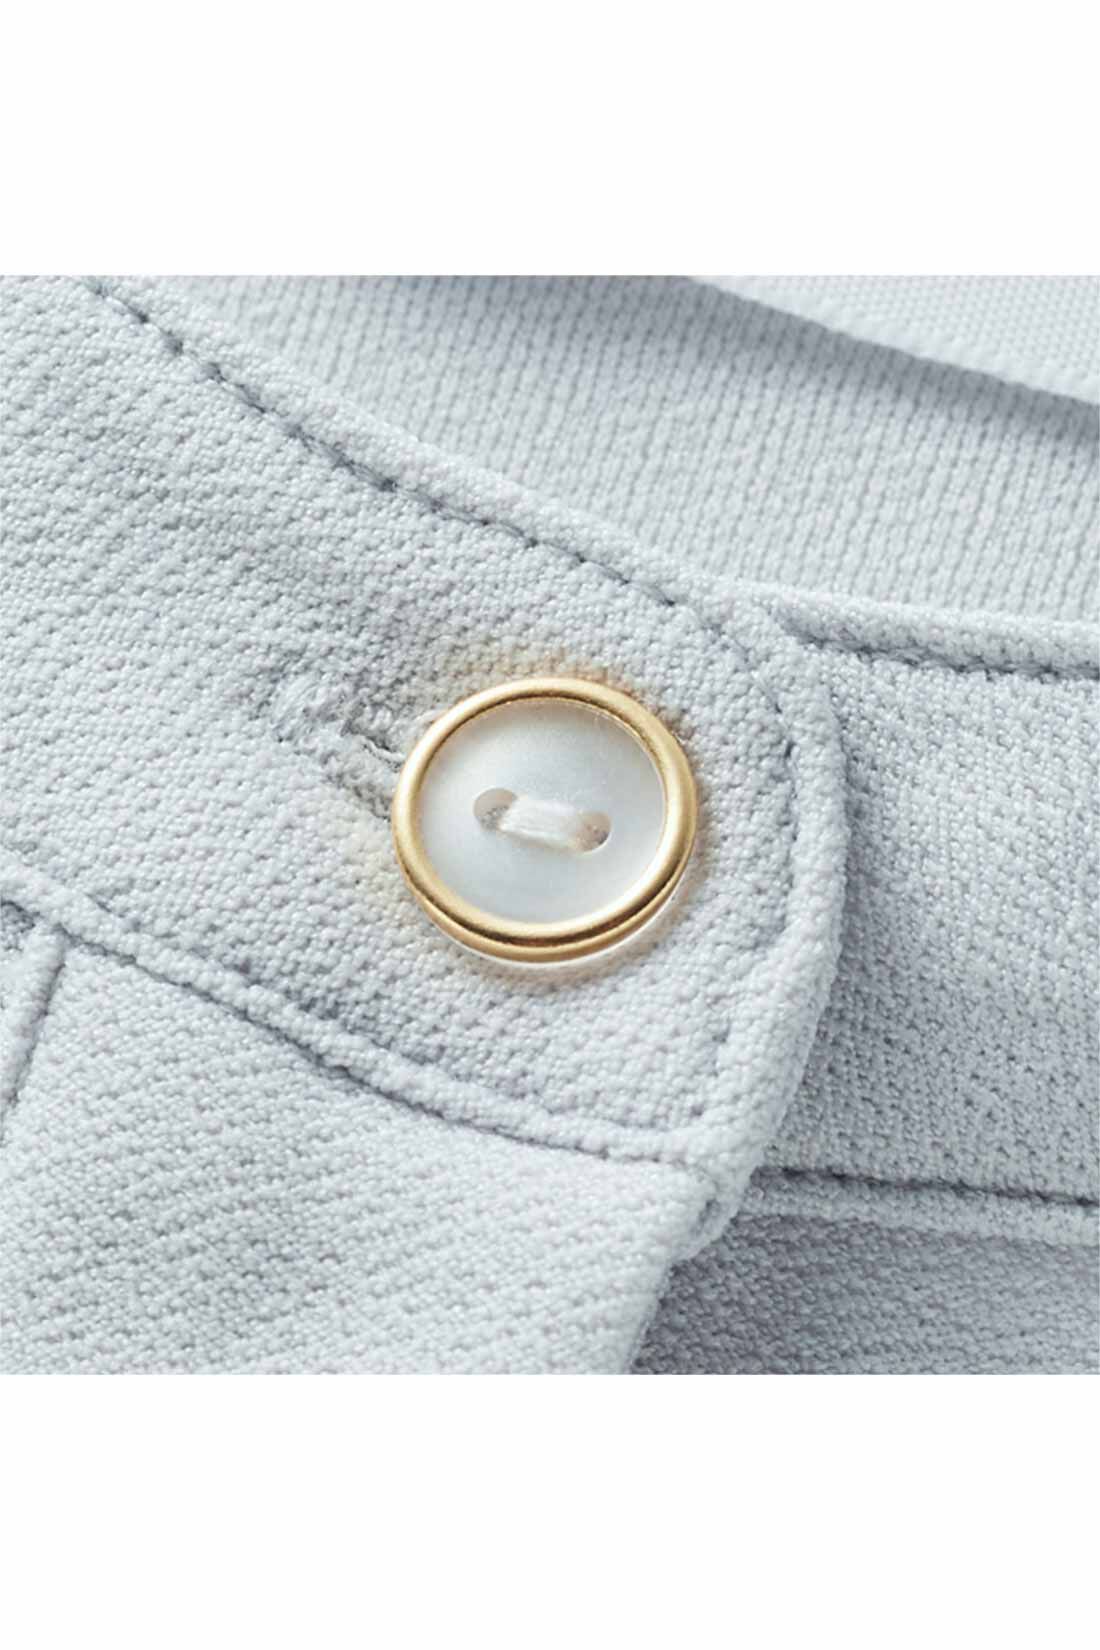 IEDIT|IEDIT[イディット]　後ろ姿も美しい伸びやかな抗菌防臭 バックプリーツトップス〈ブラック〉|衿とカフスに、きちんと感のあるゴールドの縁飾りボタンをアクセントとして。